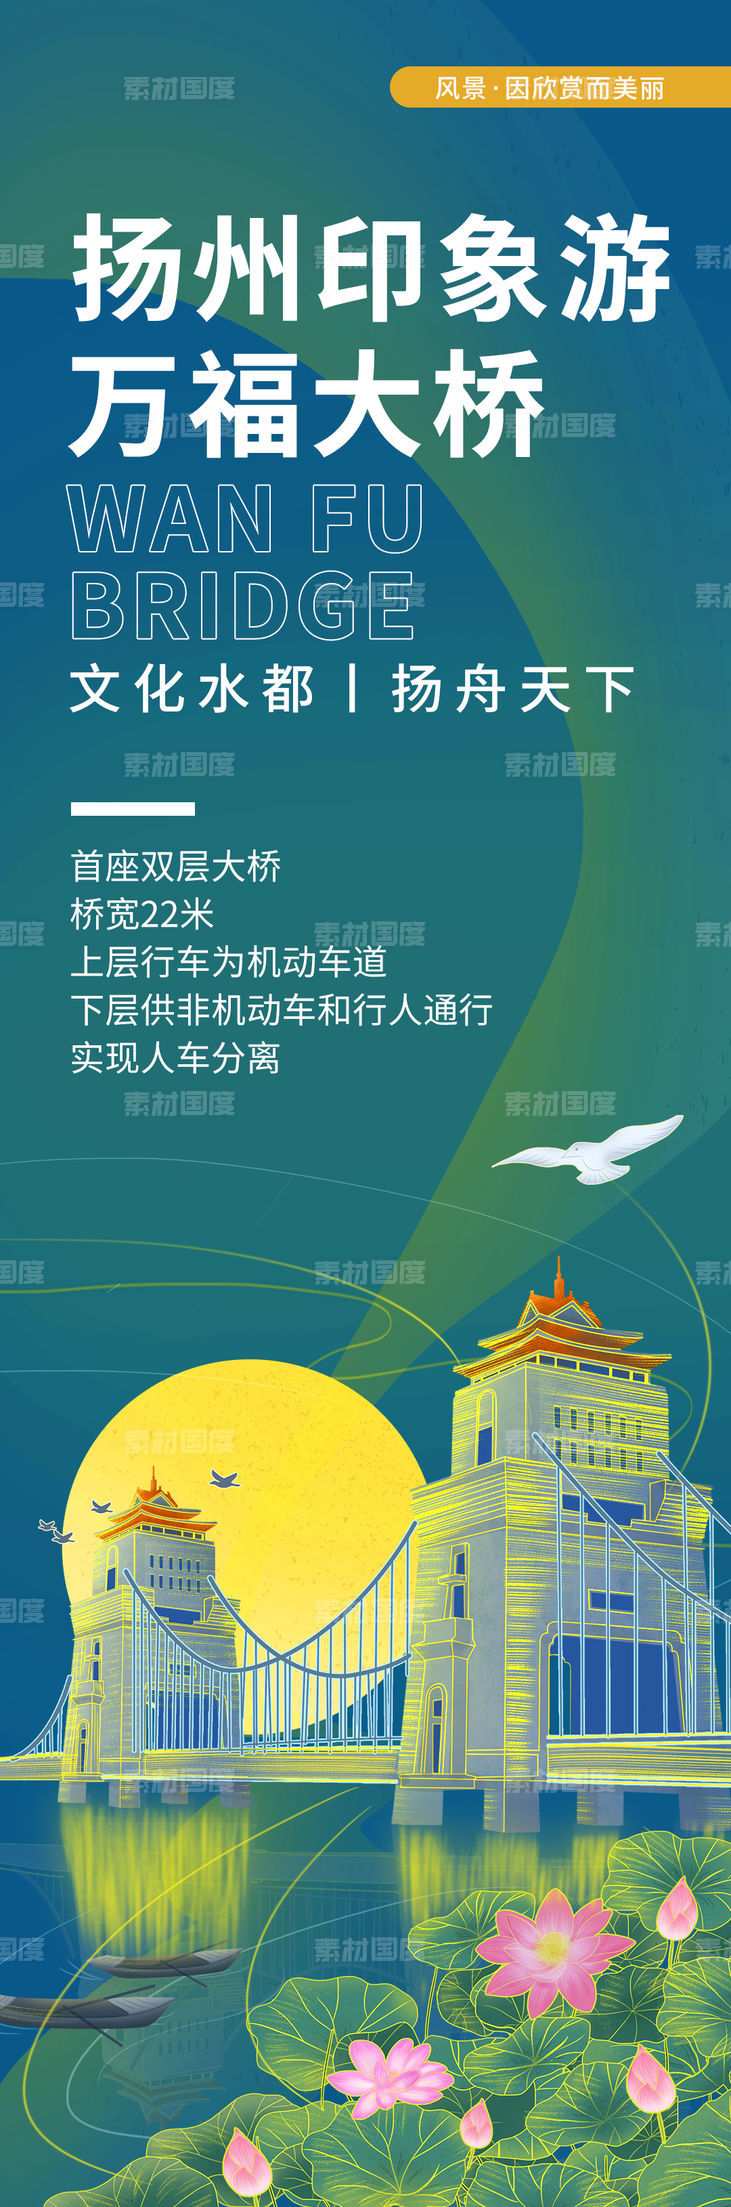 扬州印象万福大桥旅游海报